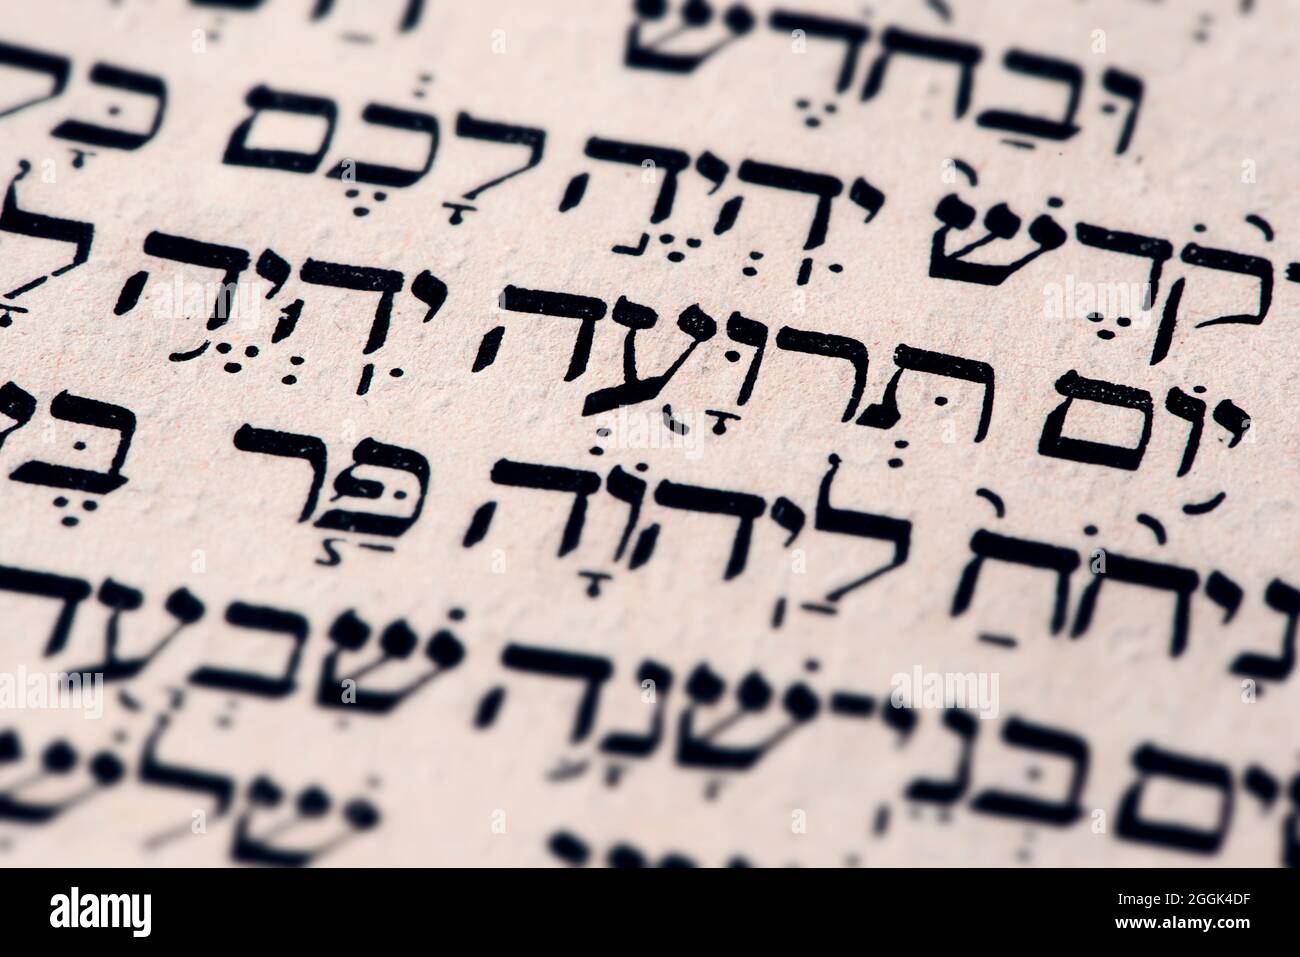 Nahaufnahme der hebräischen Wörter Yom Teruah auf der Torah-Seite, die auf englisch als Tag der Trompeten übersetzt werden - Beginn von Rosh Hashanah, Jüdisches Neujahr Stockfoto